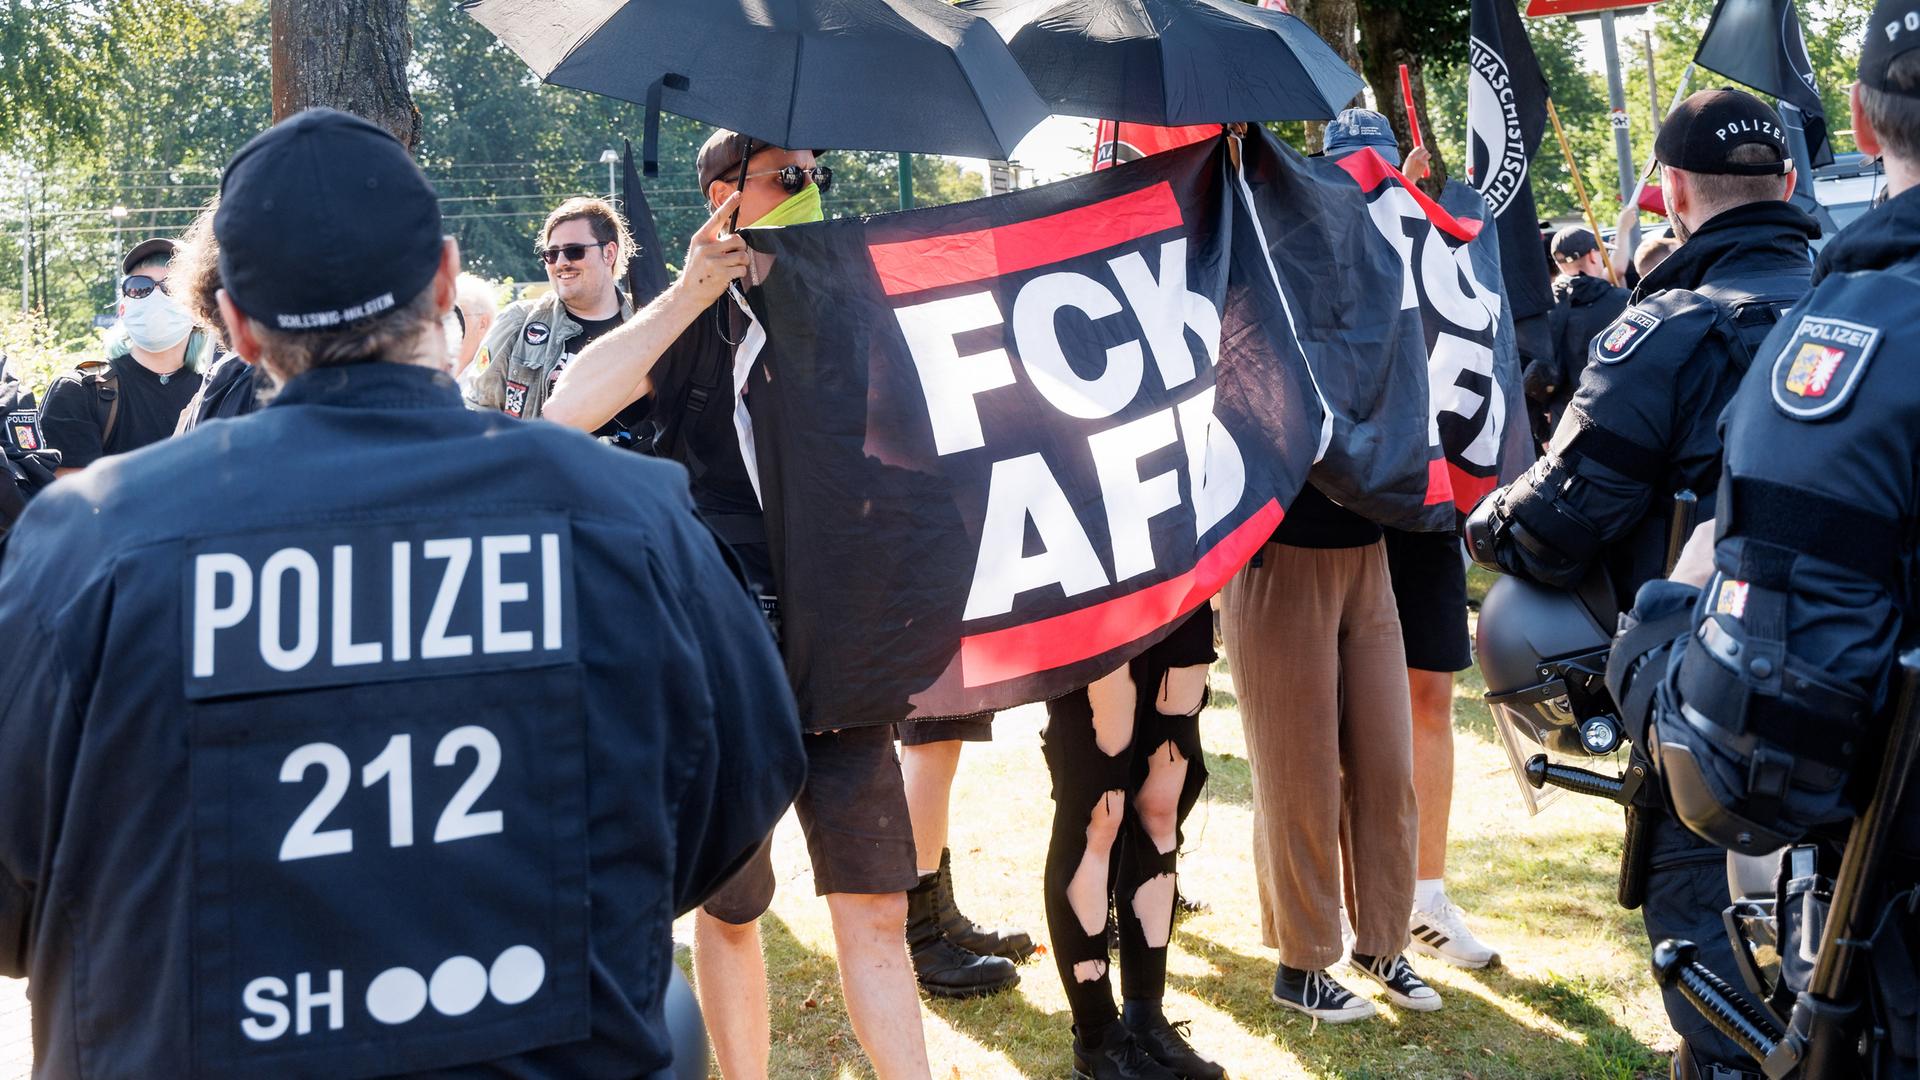 Demonstranten protestieren gegen ein von der AfD organisiertes Treffen in Neumünster. Sie halten Plakate mit der Aufschrift "FCK AFD" und sind von Polizisten umgeben. 